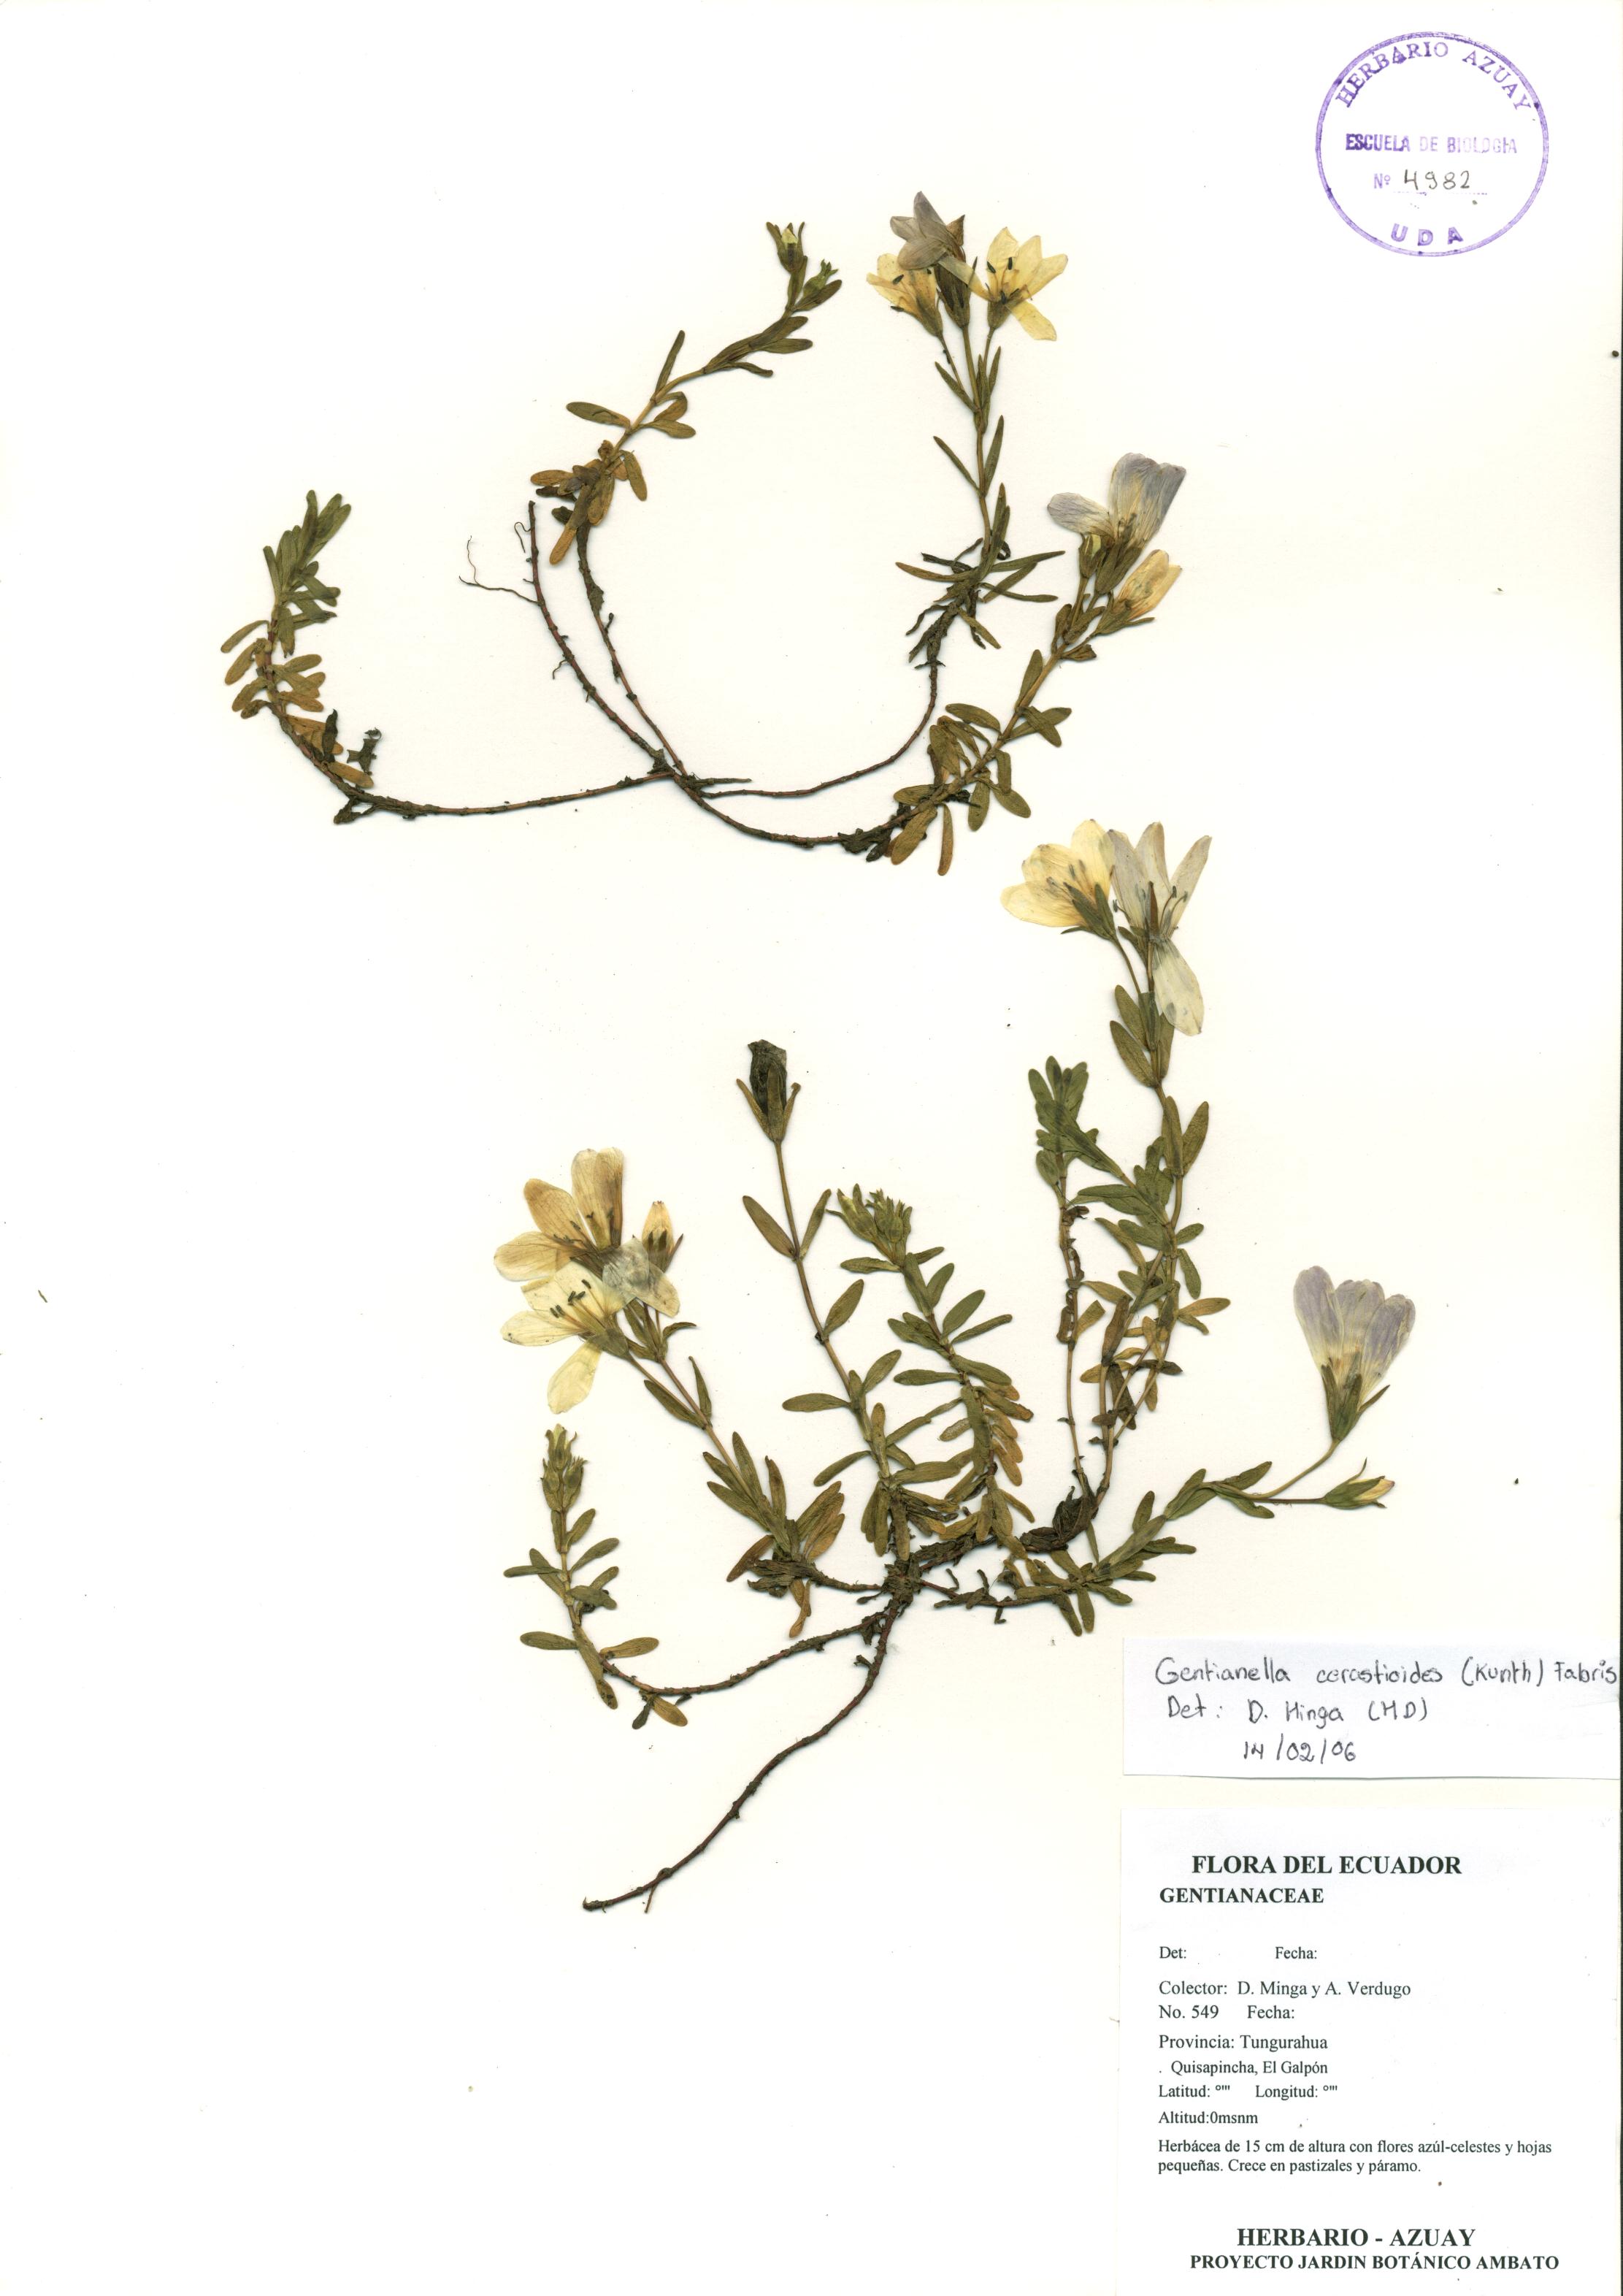 Gentianella cerastioides (Kunth) Fabris